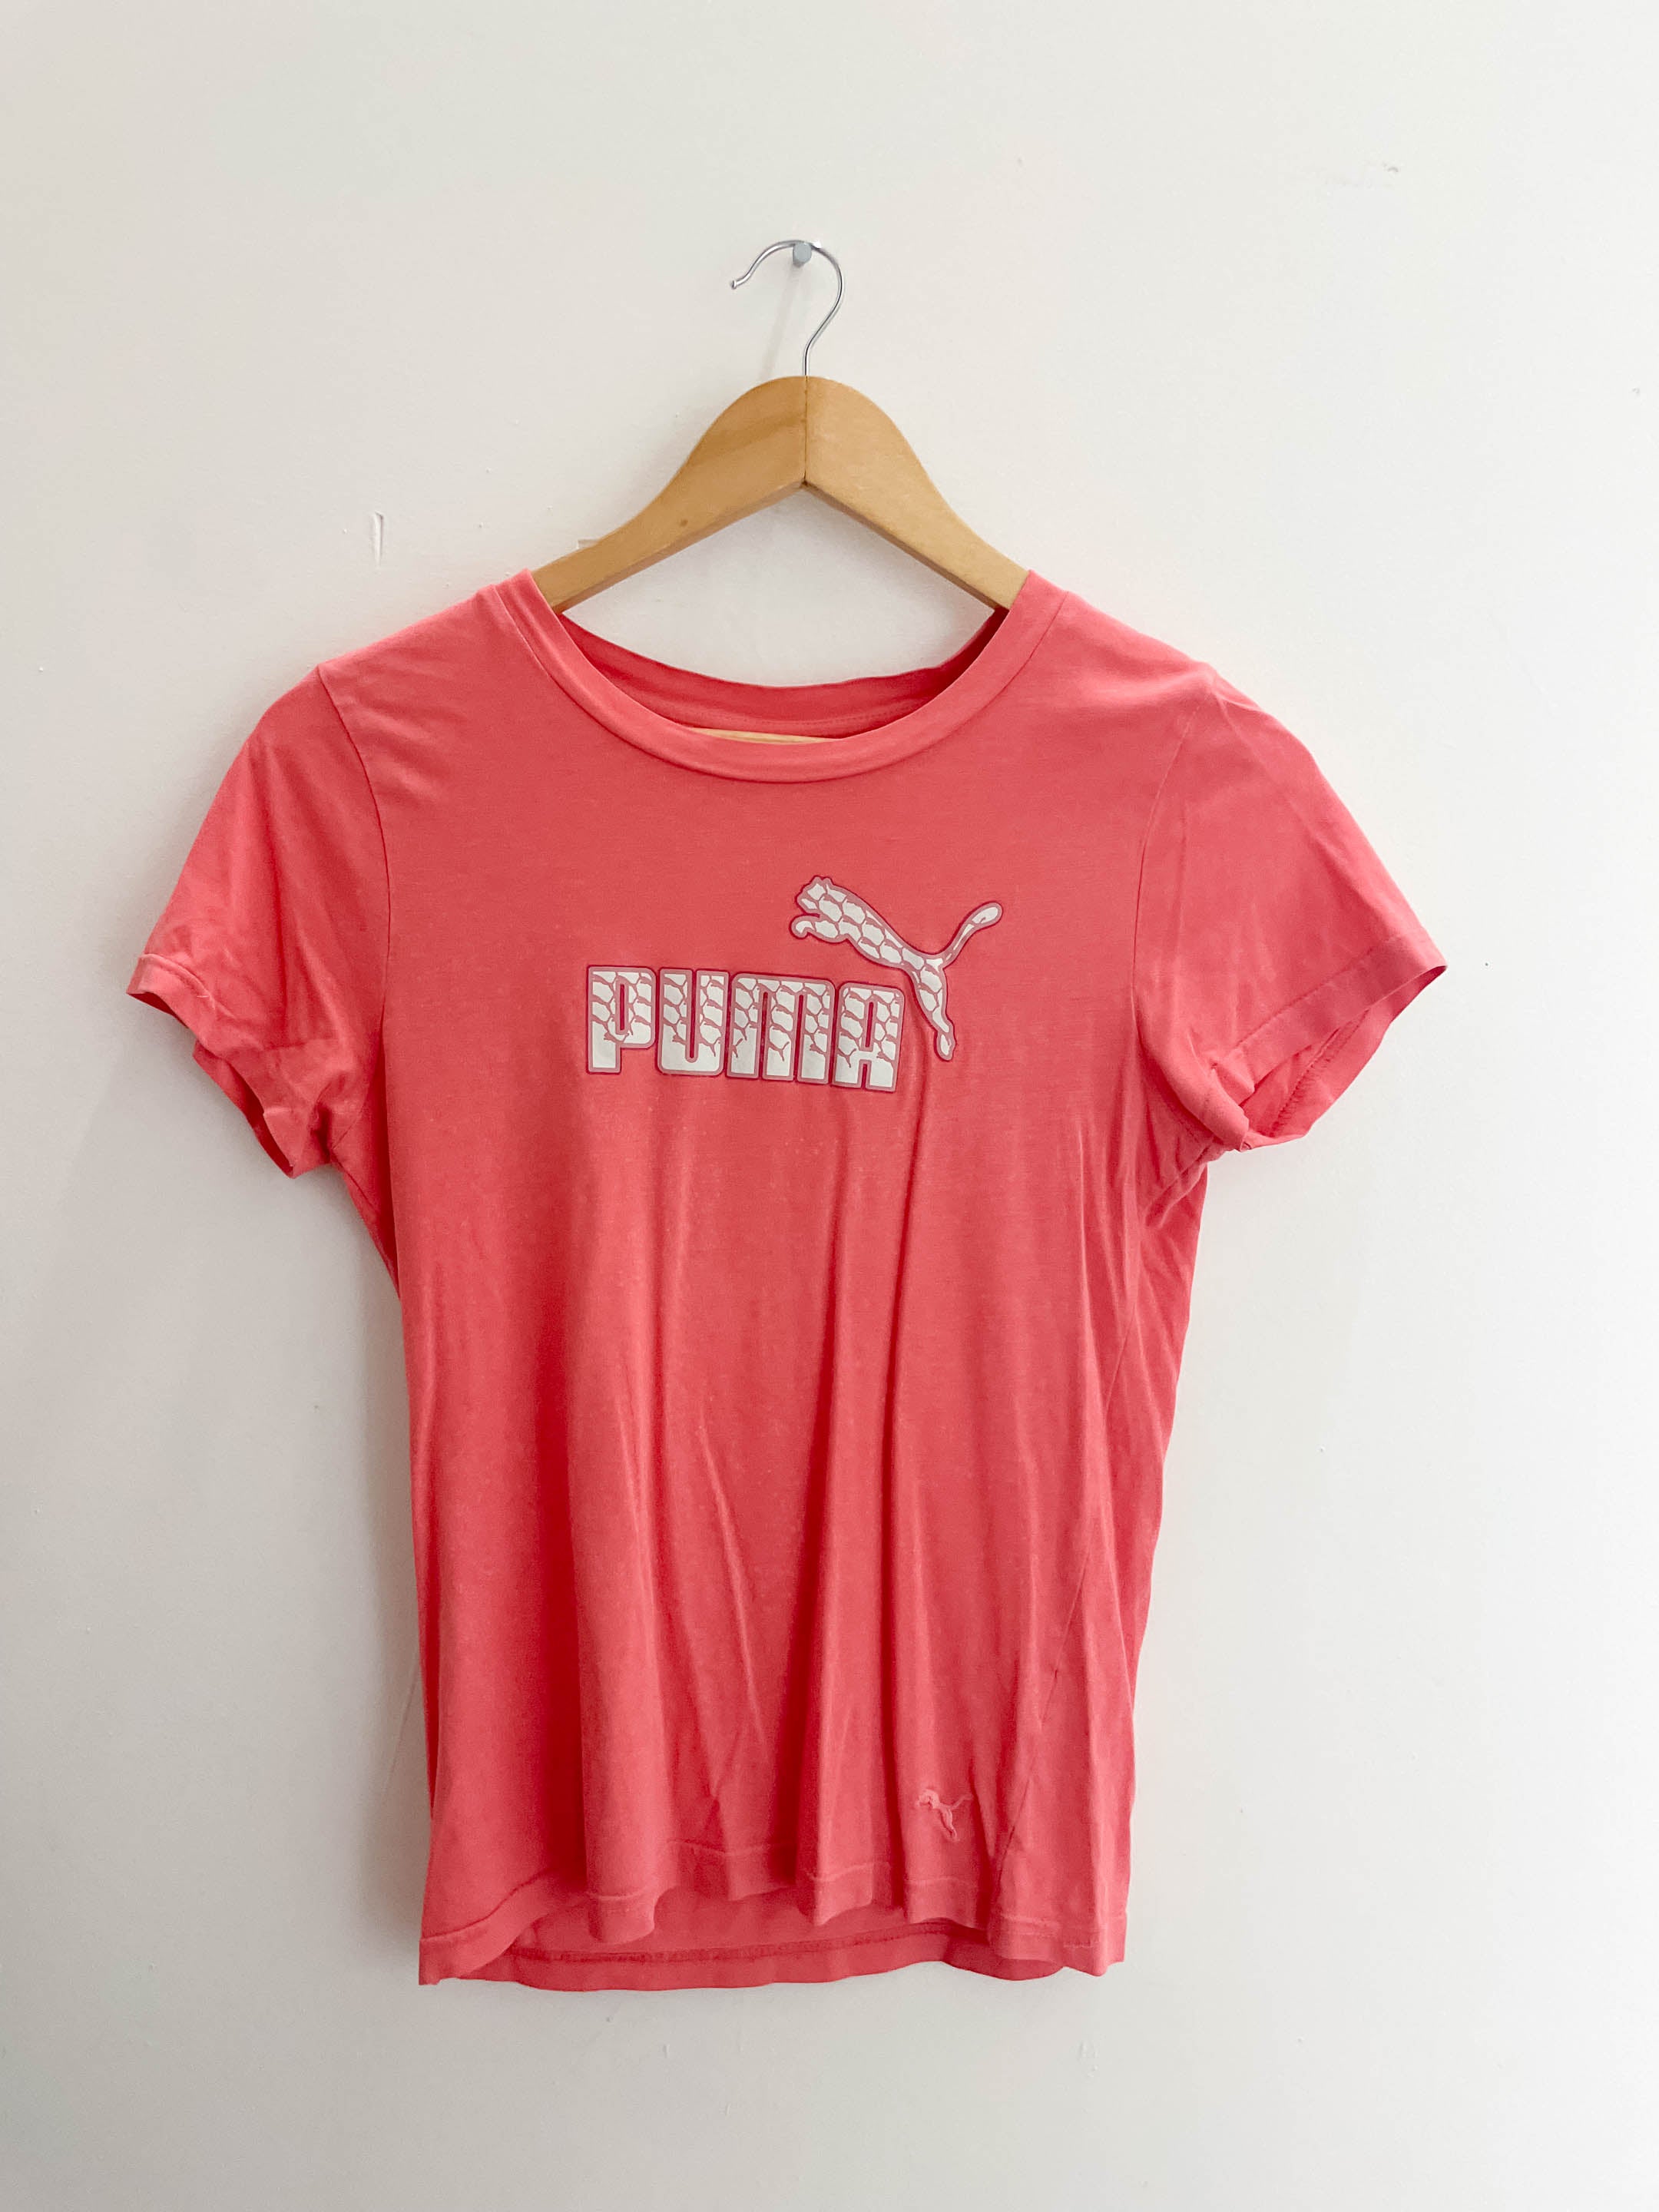 Vintage puma peach tshirt size XS